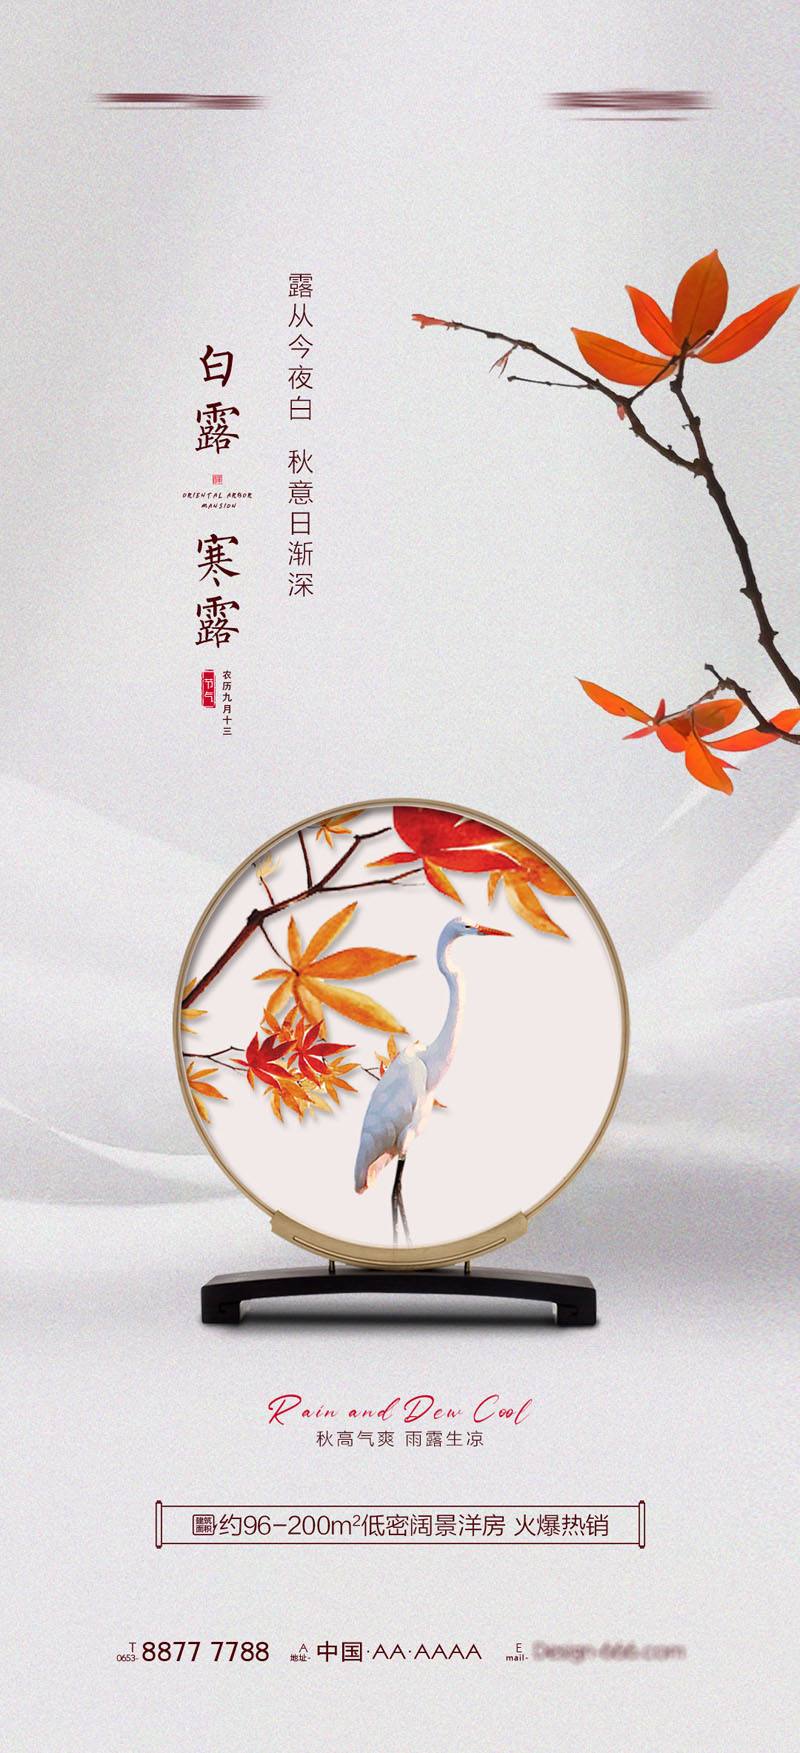 94款中国传统二十四节气之寒露节日海报PSD模板 设计素材 第1张